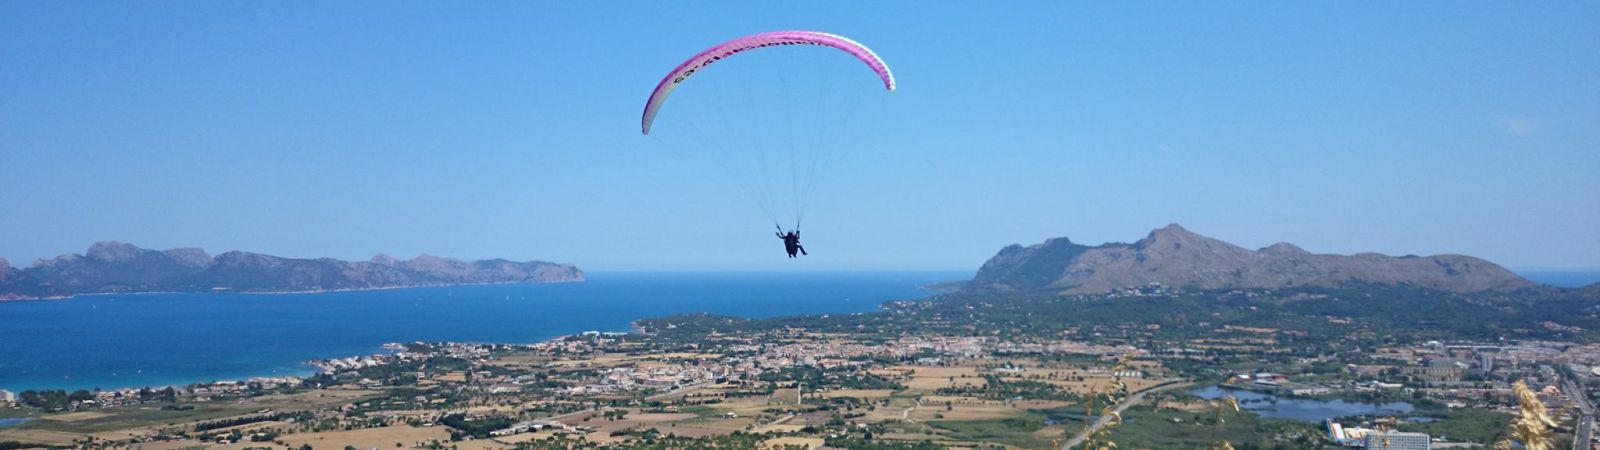 Paragliding Mallorca